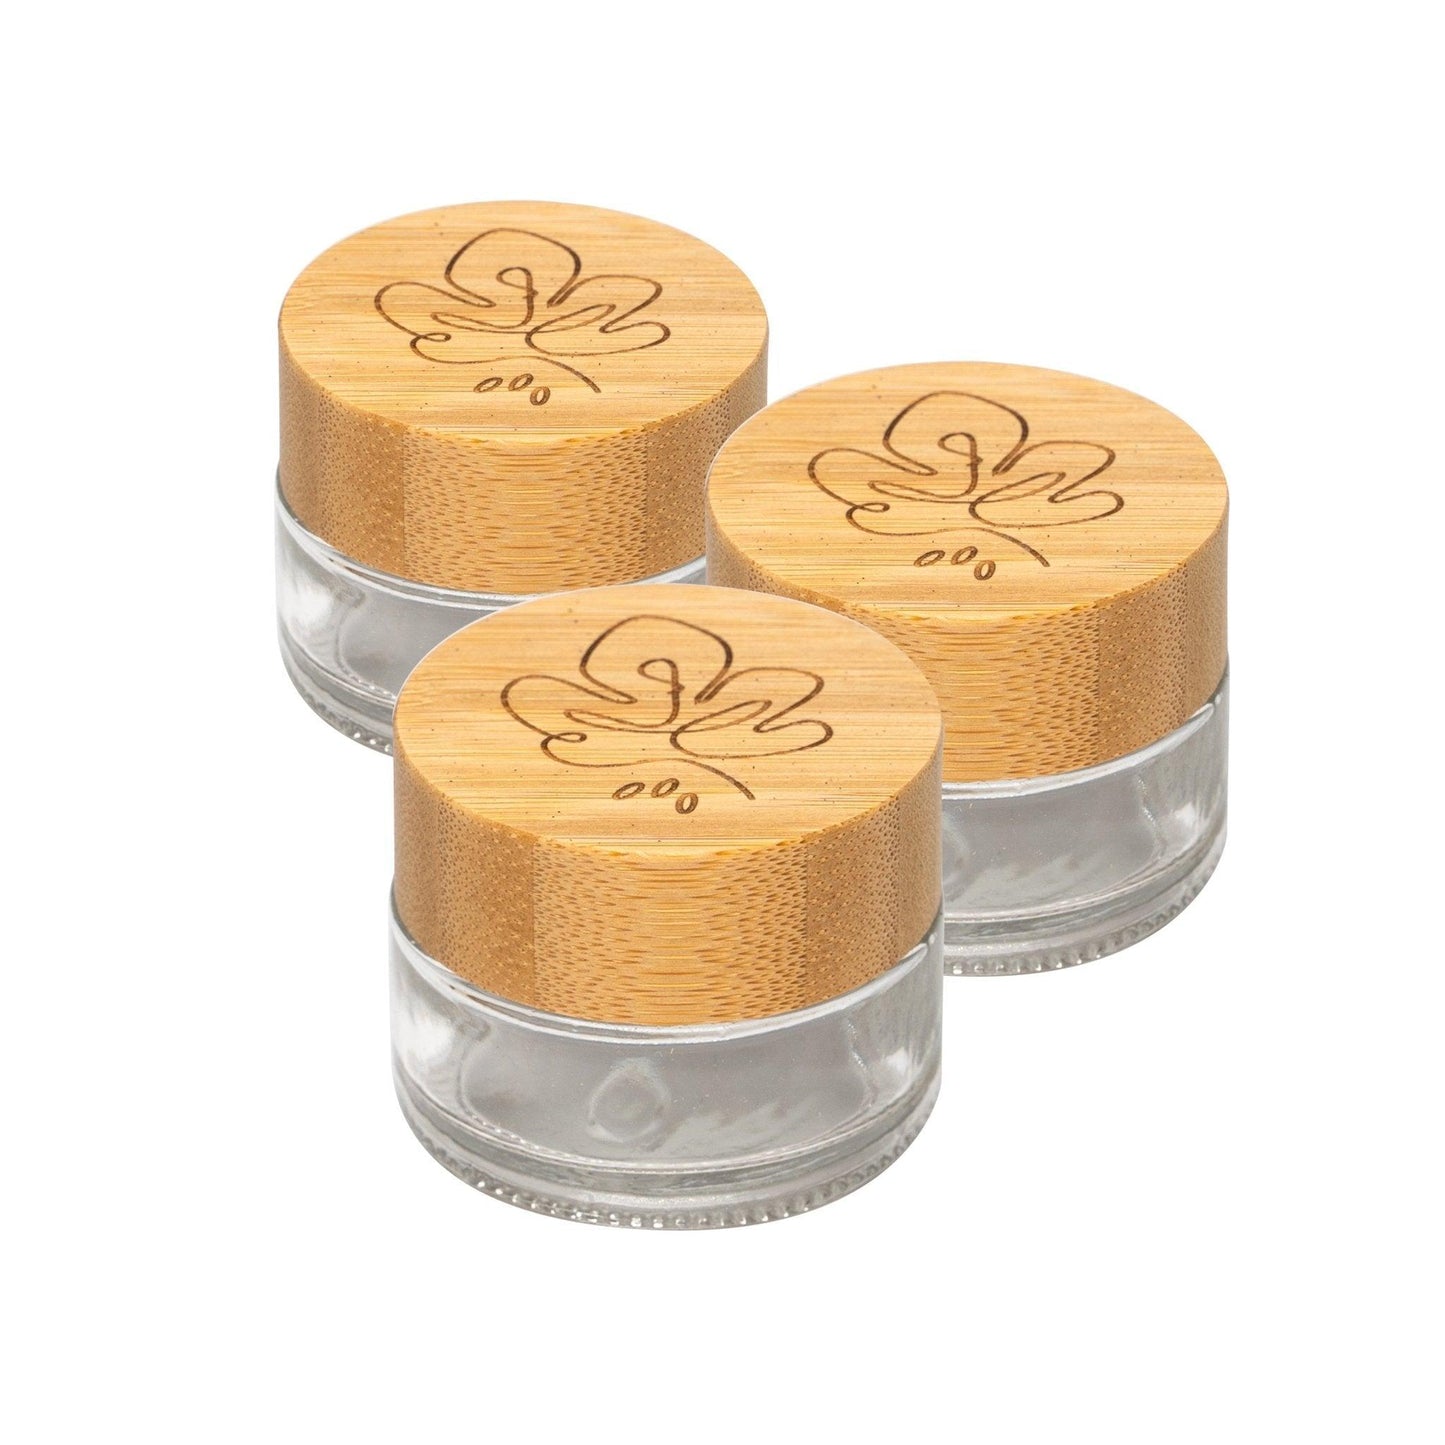 B-Ware: Glastiegel mit Bambusdeckel & Gravur für selbstgemachte Kosmetik 3er Set 20g "Klar" - Mixcover - skin:kitchen